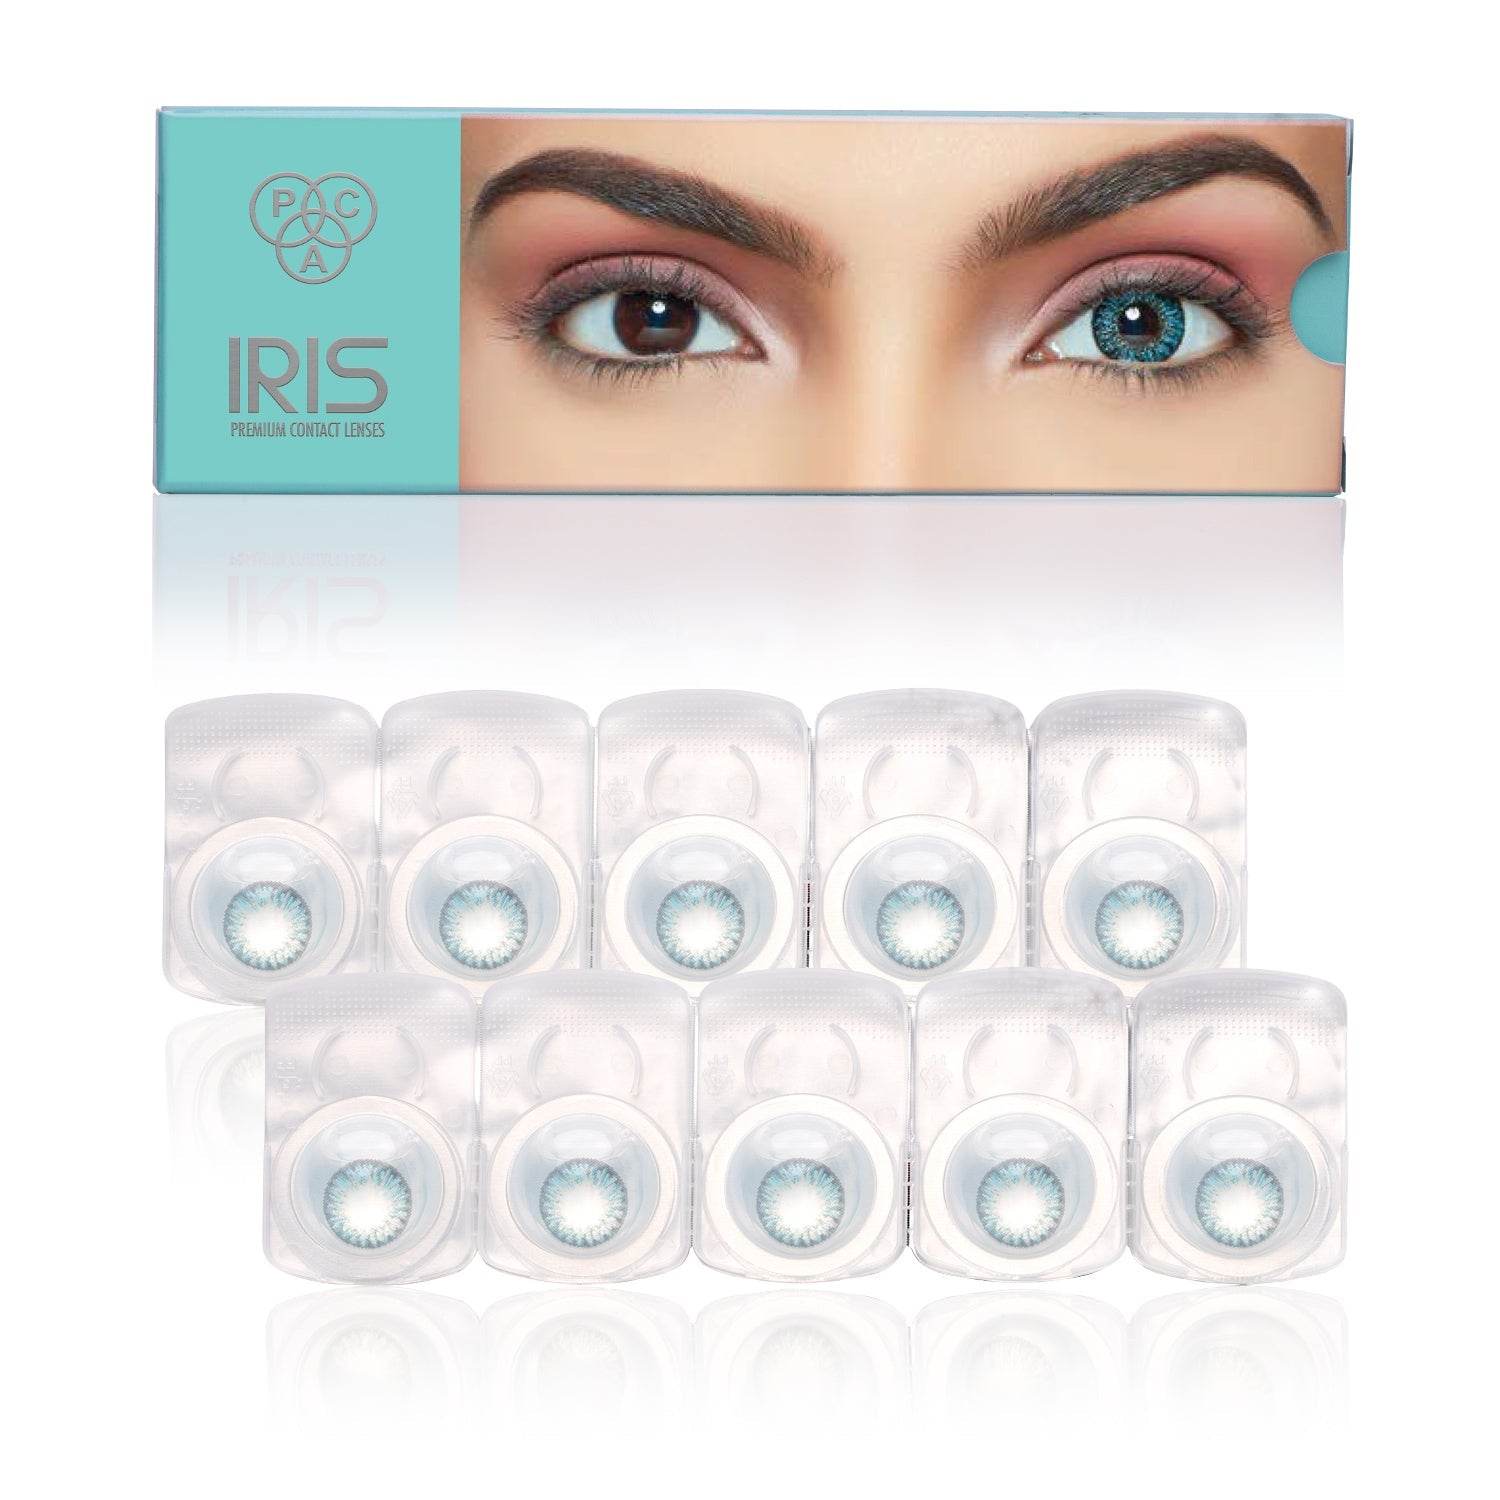 PAC Cosmetics IRIS Premium Contact Lenses (5 Pairs) #Color_Turquoise